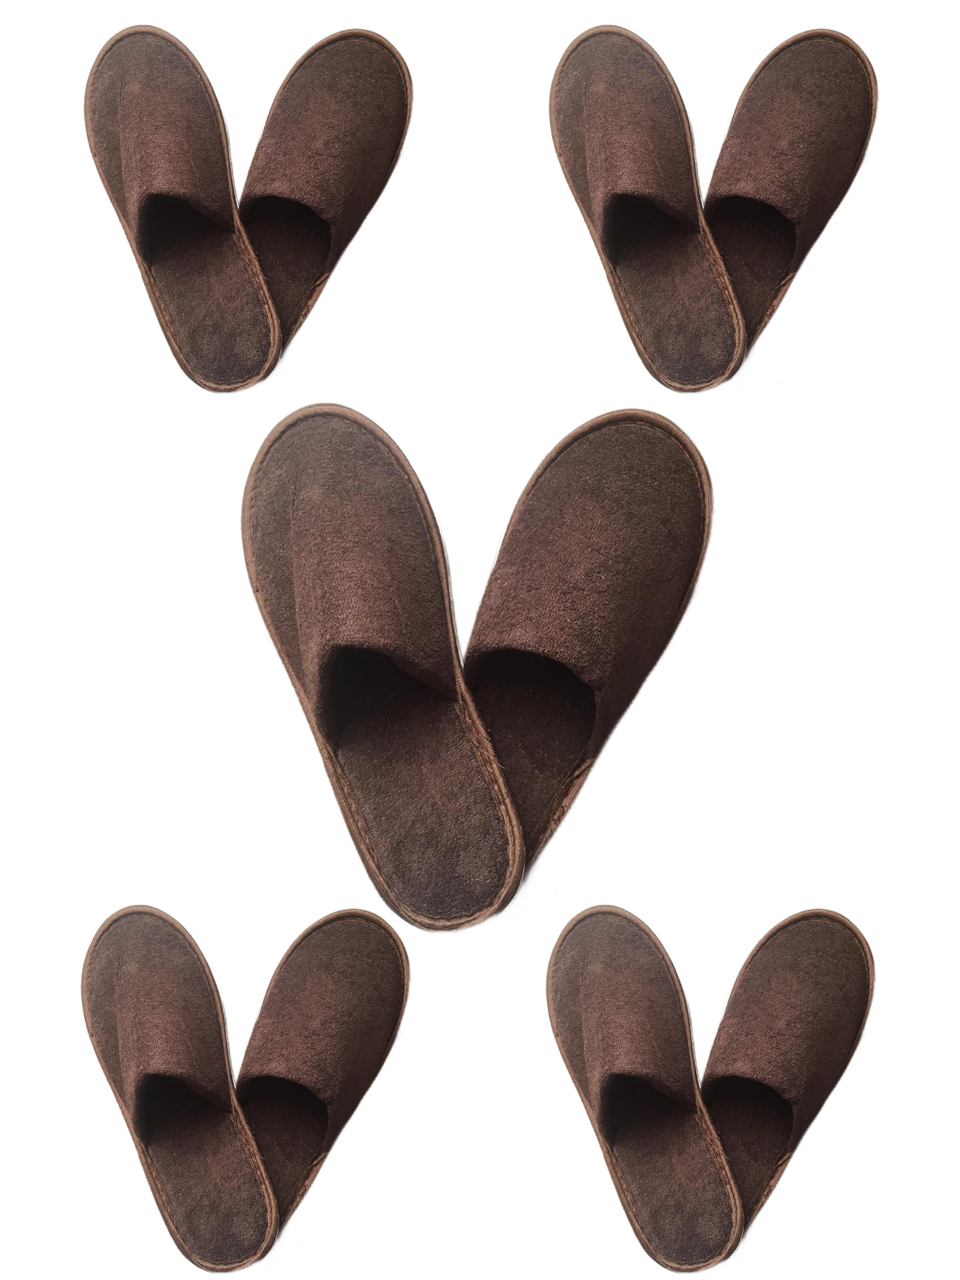 фото Комплект тапочек мужских полокрон 12715 коричневых 41-44 ru